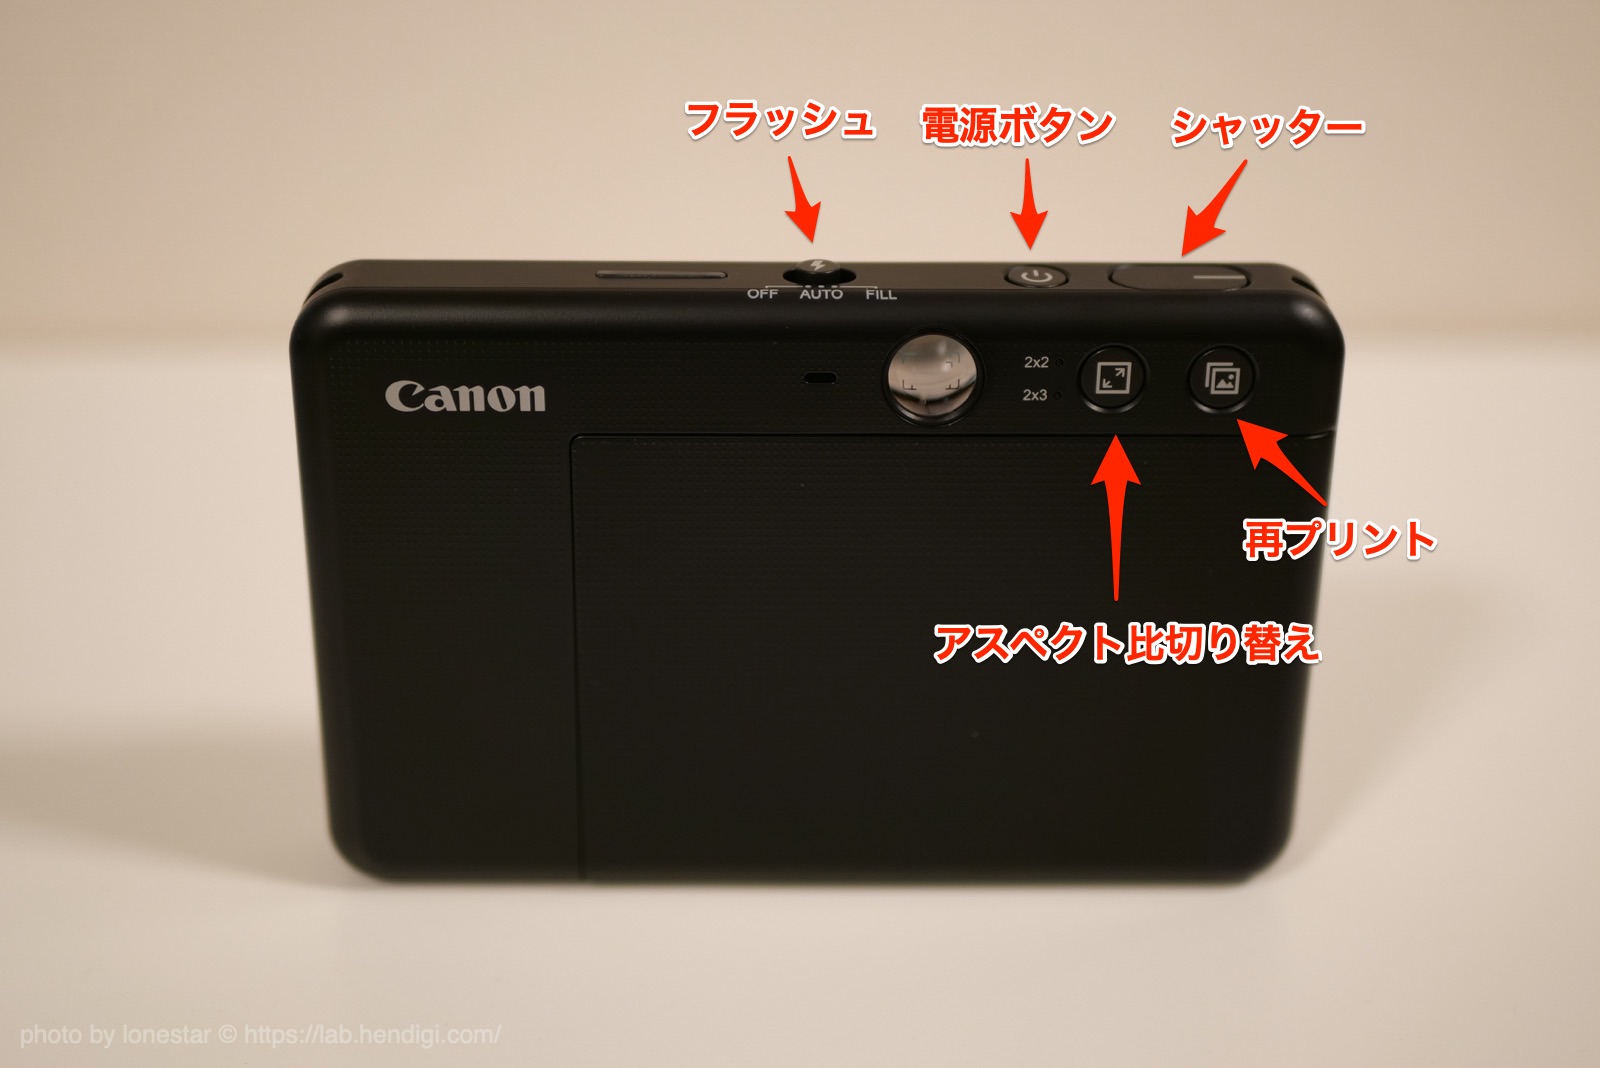 超美品再入荷品質至上! Canon iNSPiC ZC-123-PW インスタントカメラ